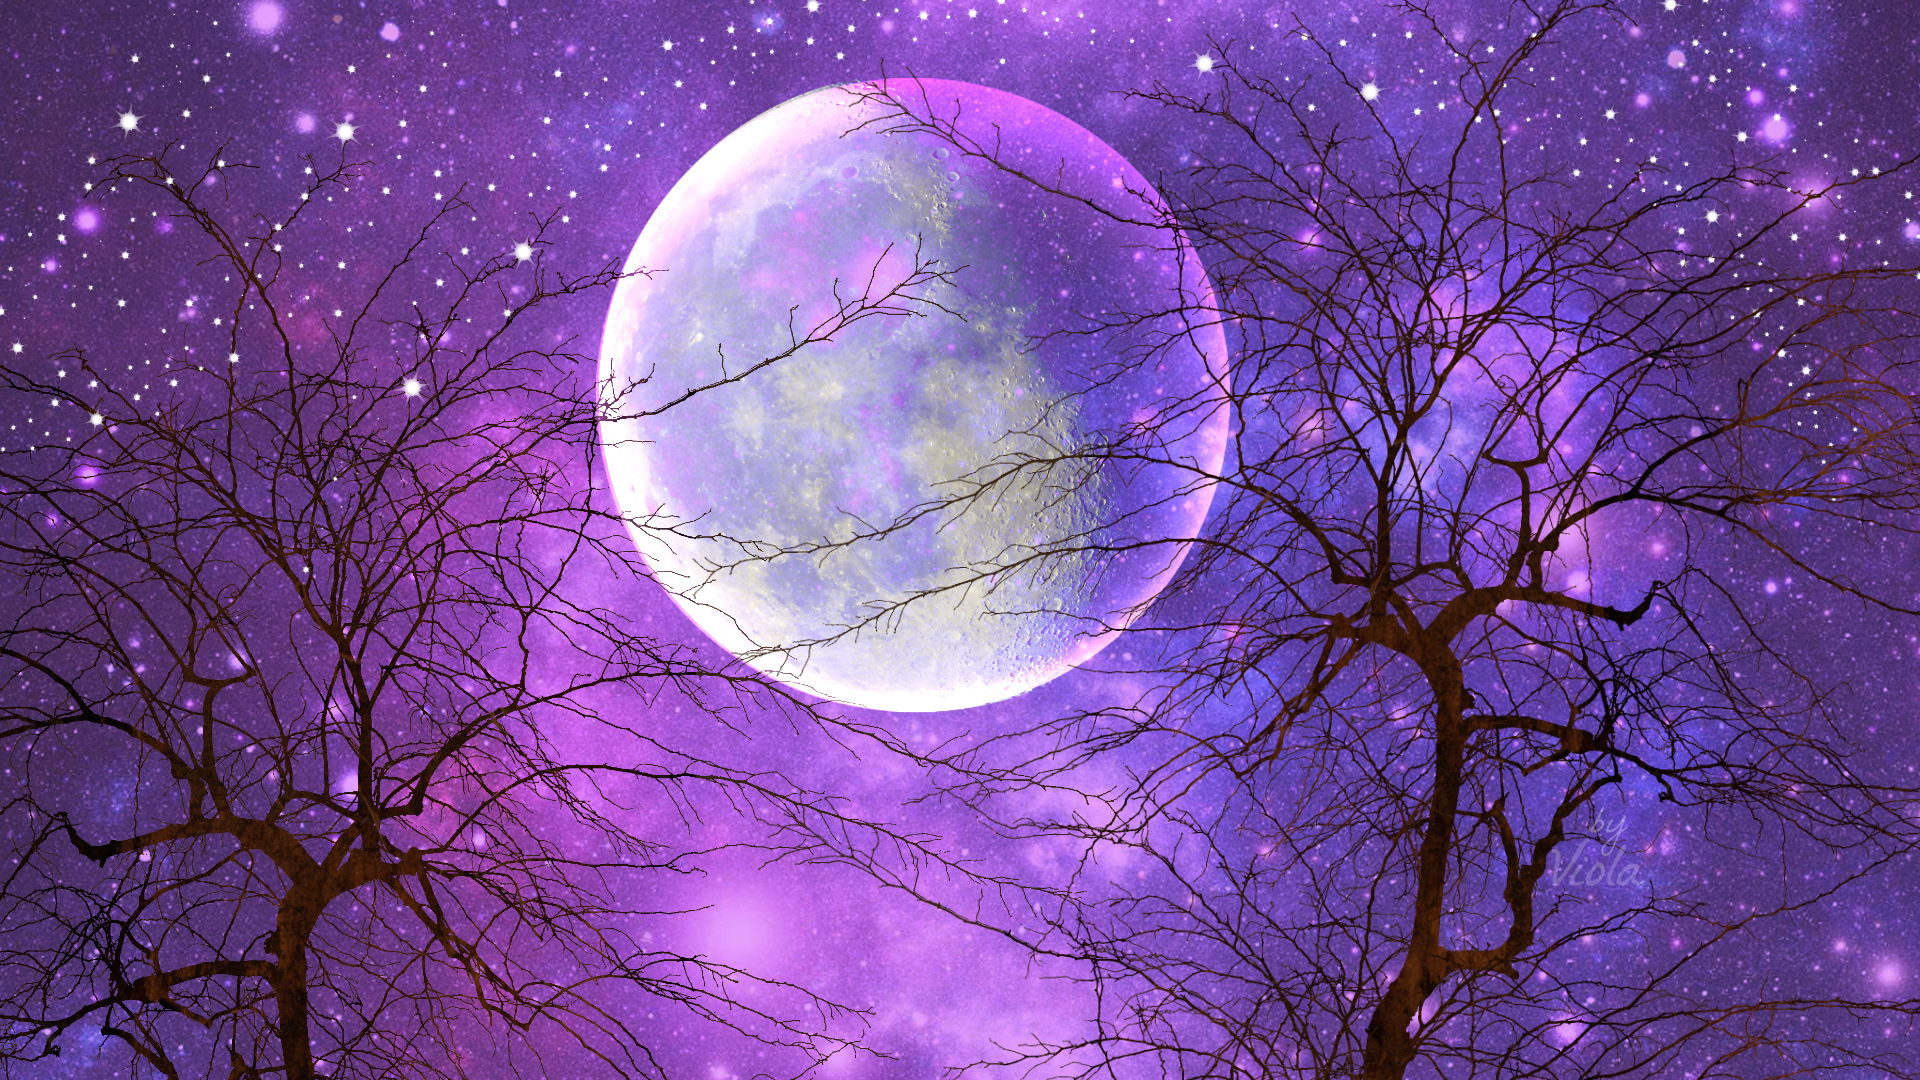 Скачать обои бесплатно Небо, Луна, Дерево, Звездное Небо, Пурпурный, Художественные картинка на рабочий стол ПК